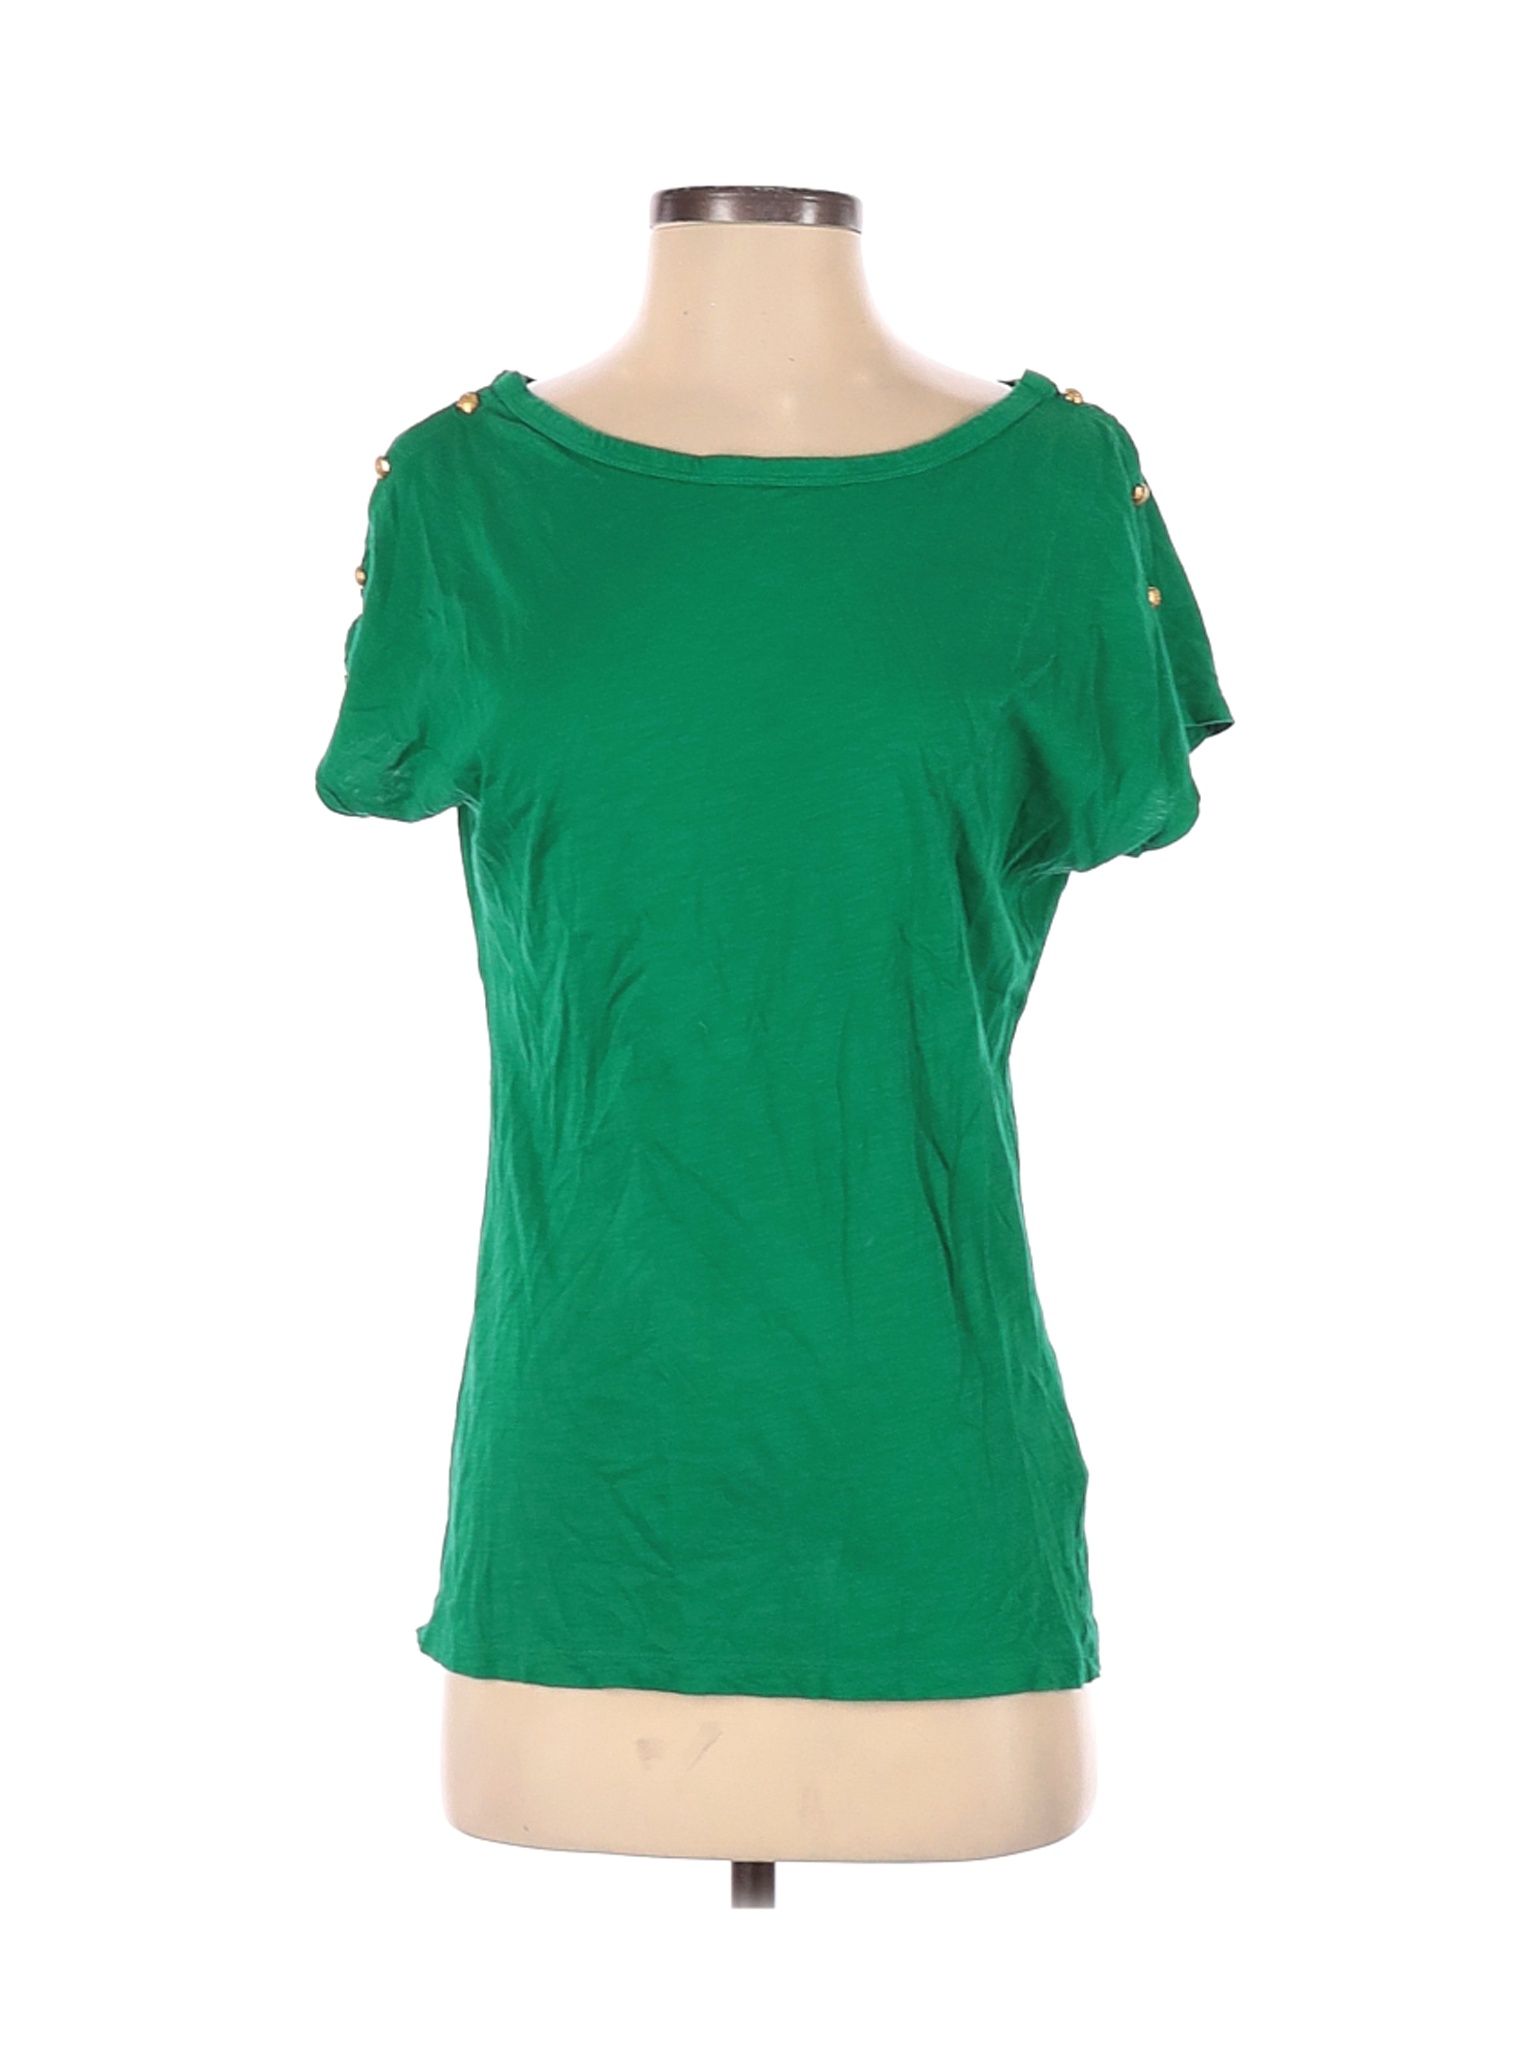 Lauren by Ralph Lauren Women Green Short Sleeve T-Shirt S | eBay